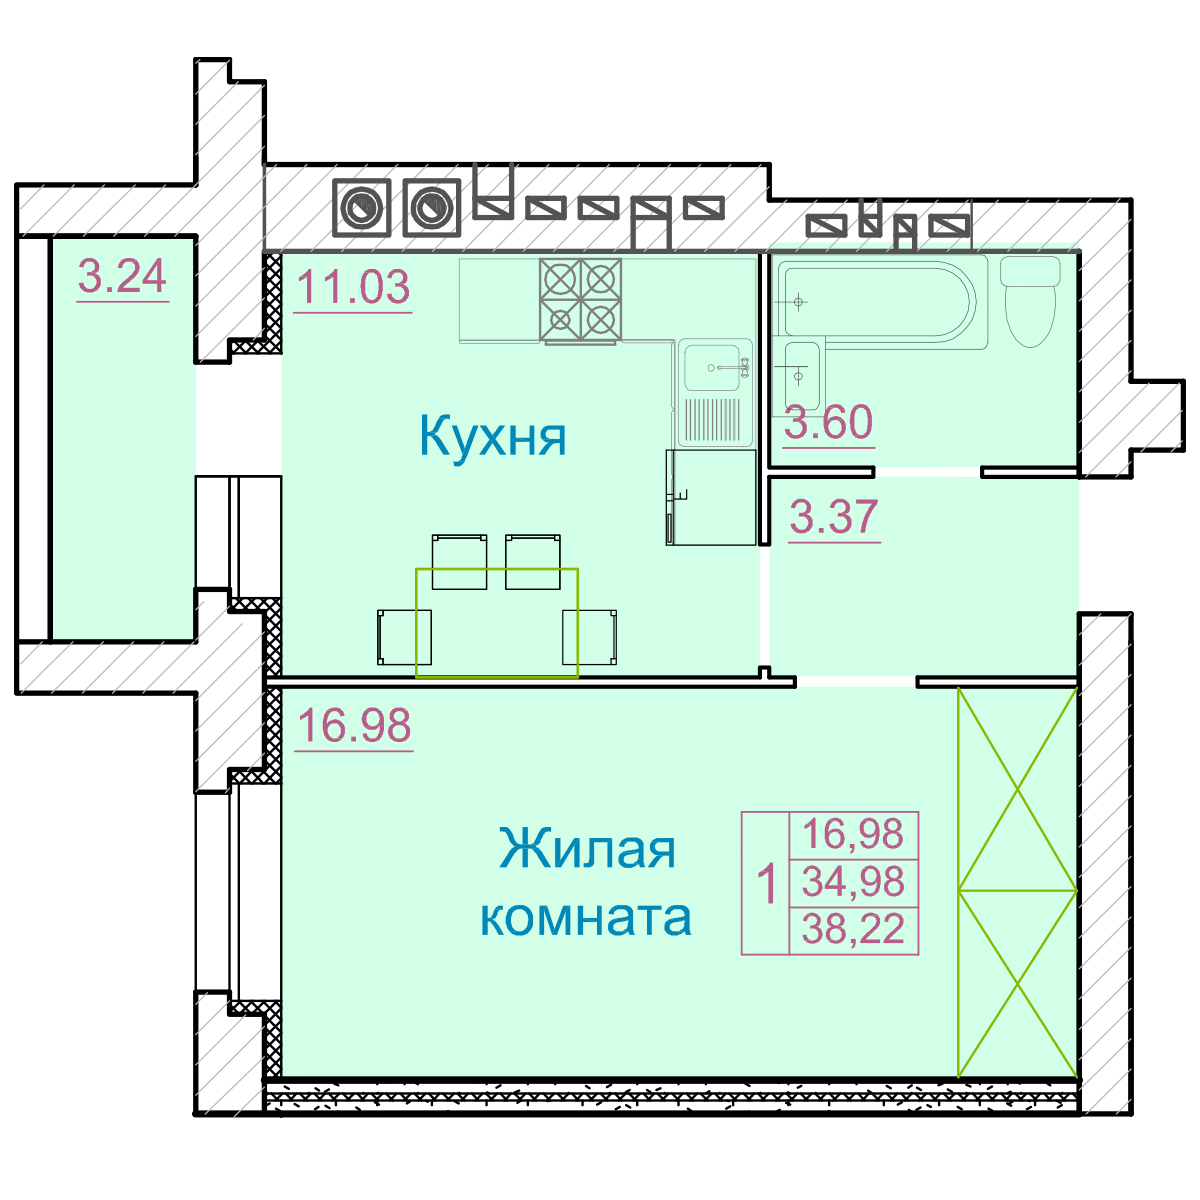 Планировка комнаты в общежитии 17 кв м